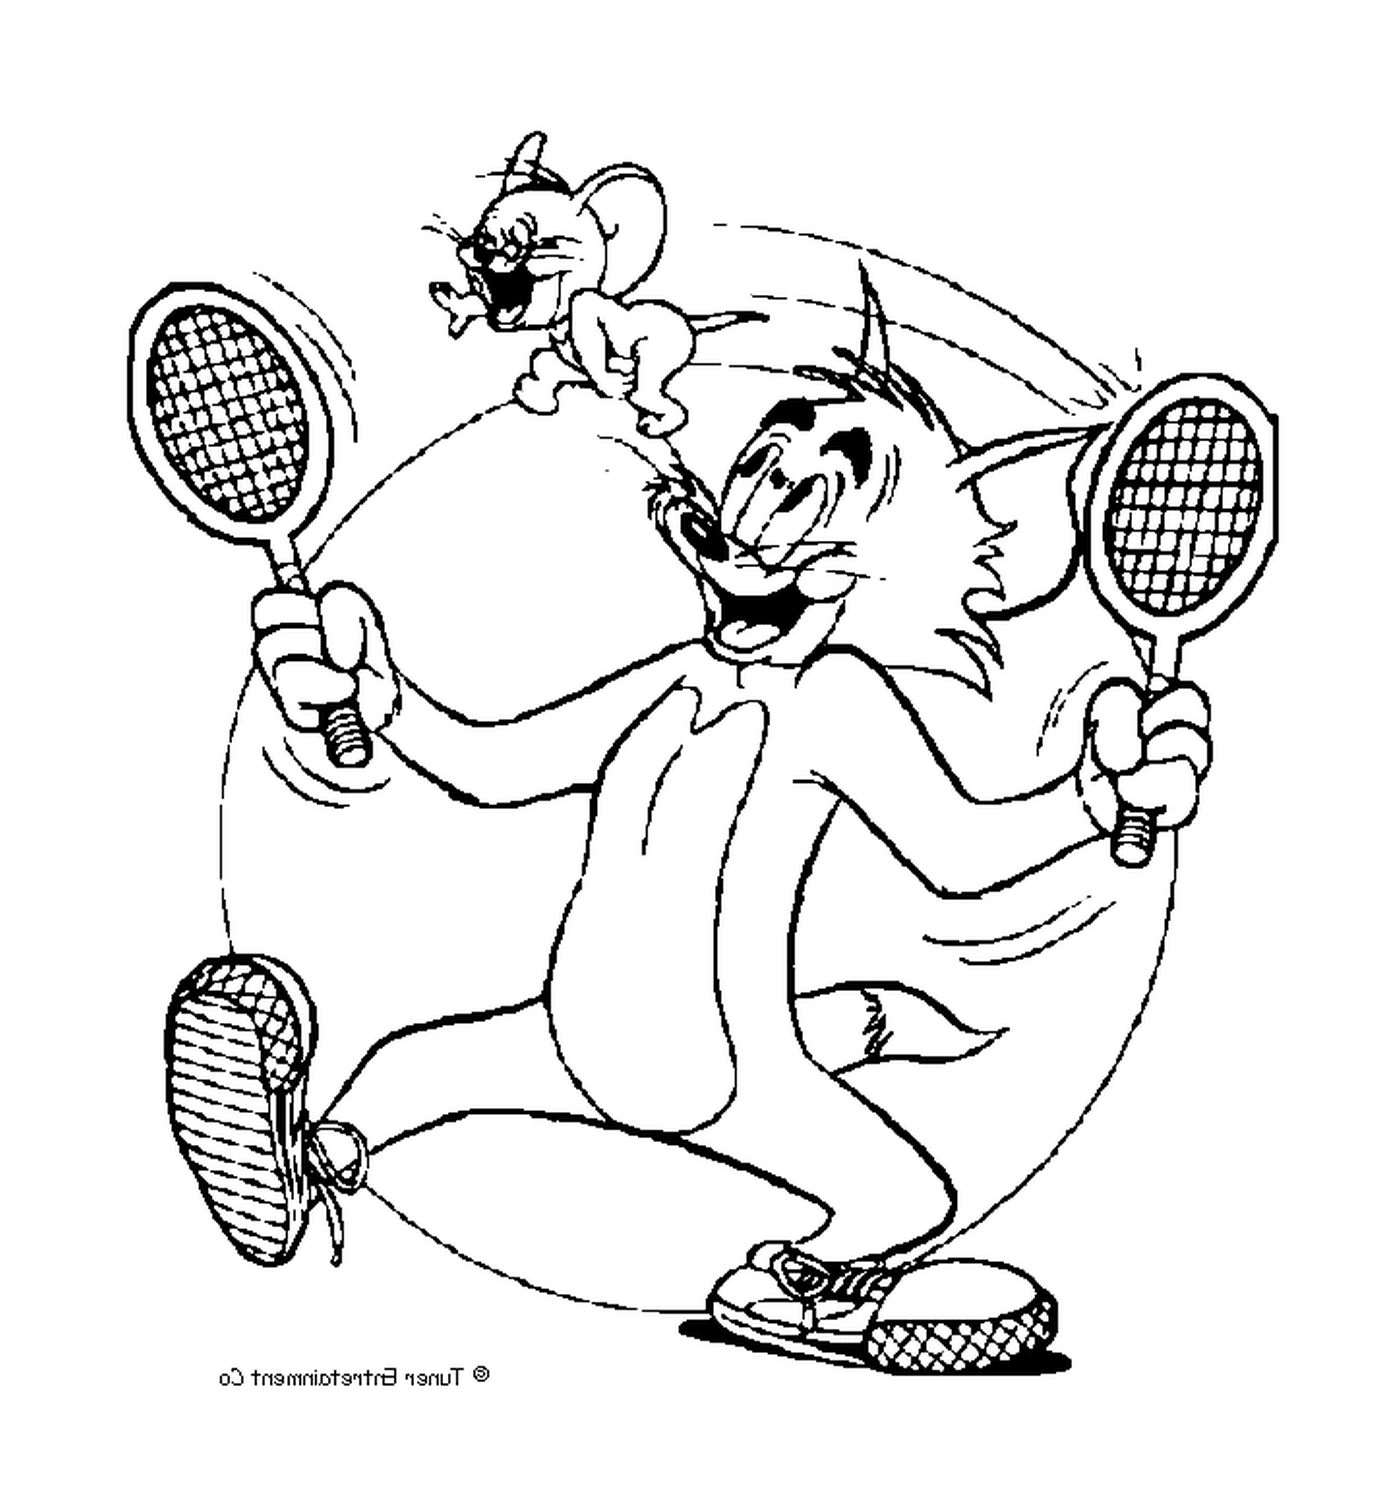  Tom joga tênis com Jerry 